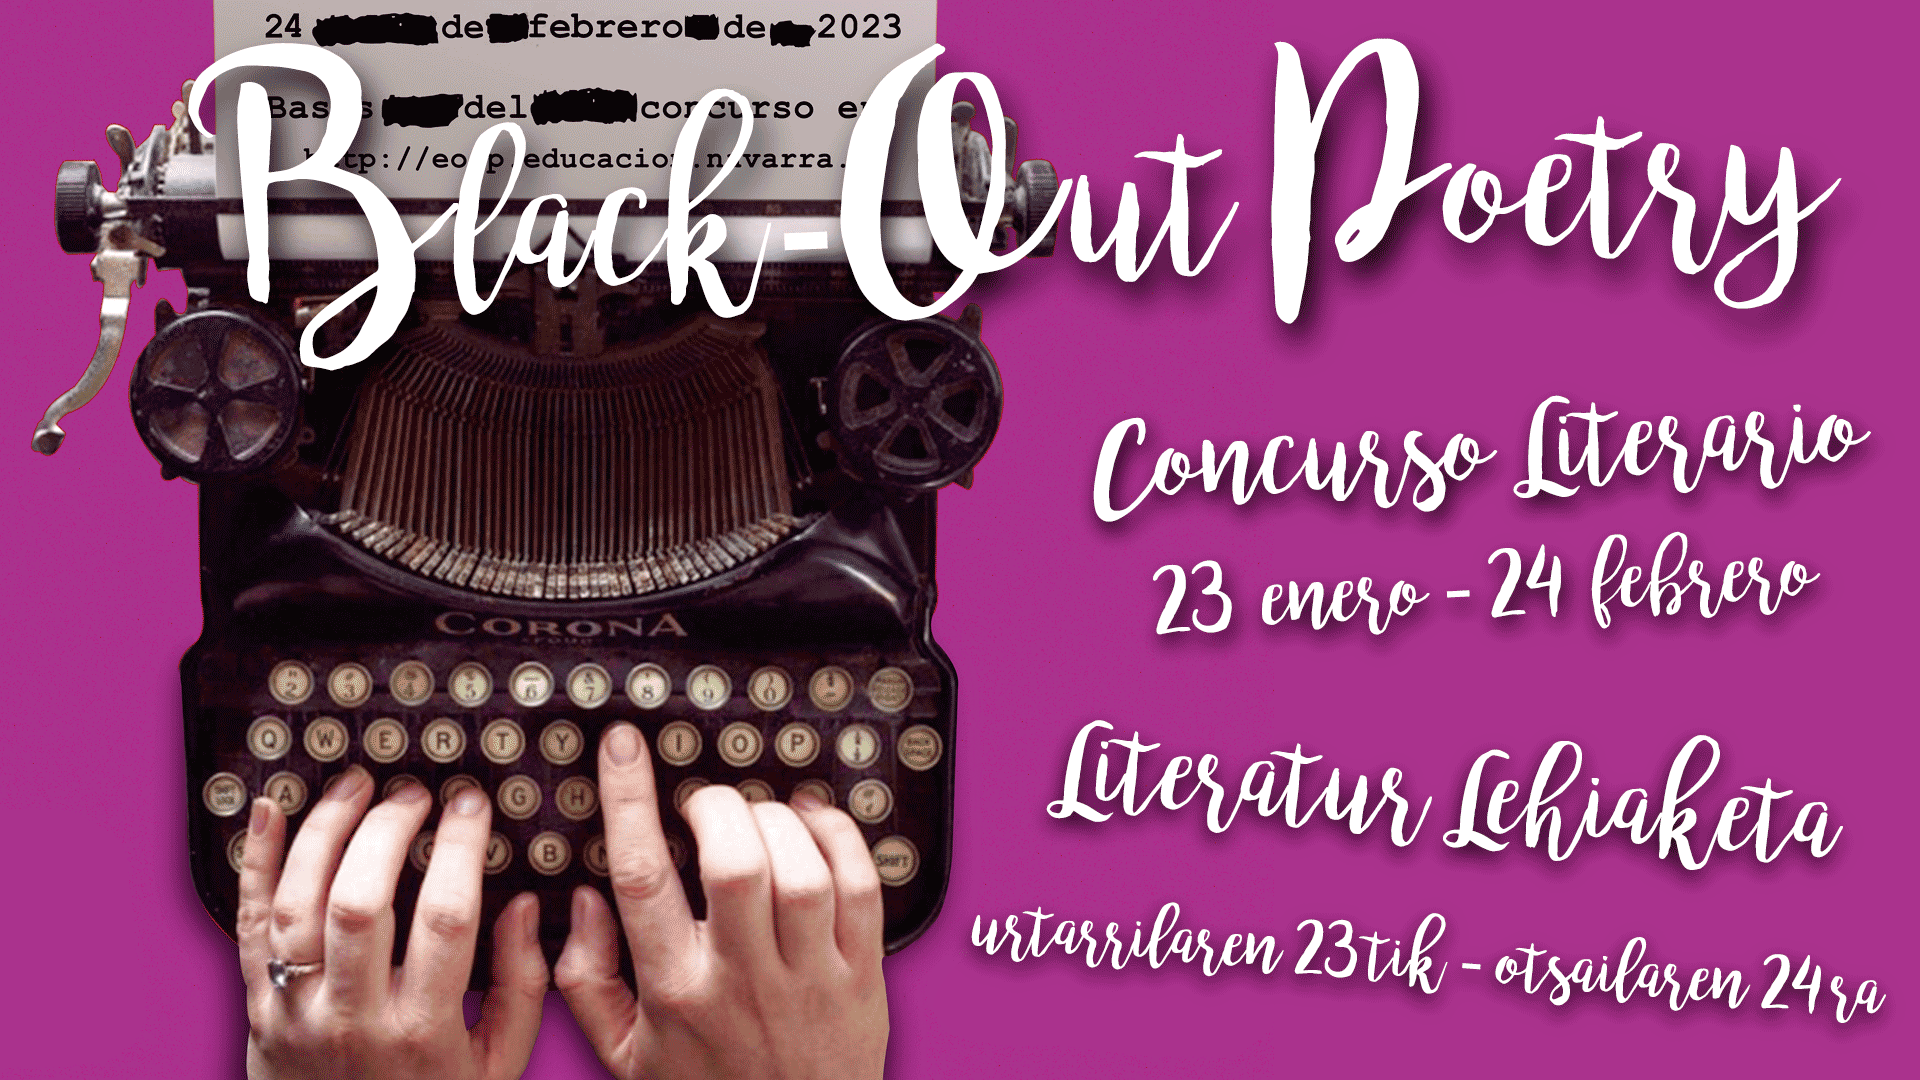 Concurso Literario “Black-out poetry”